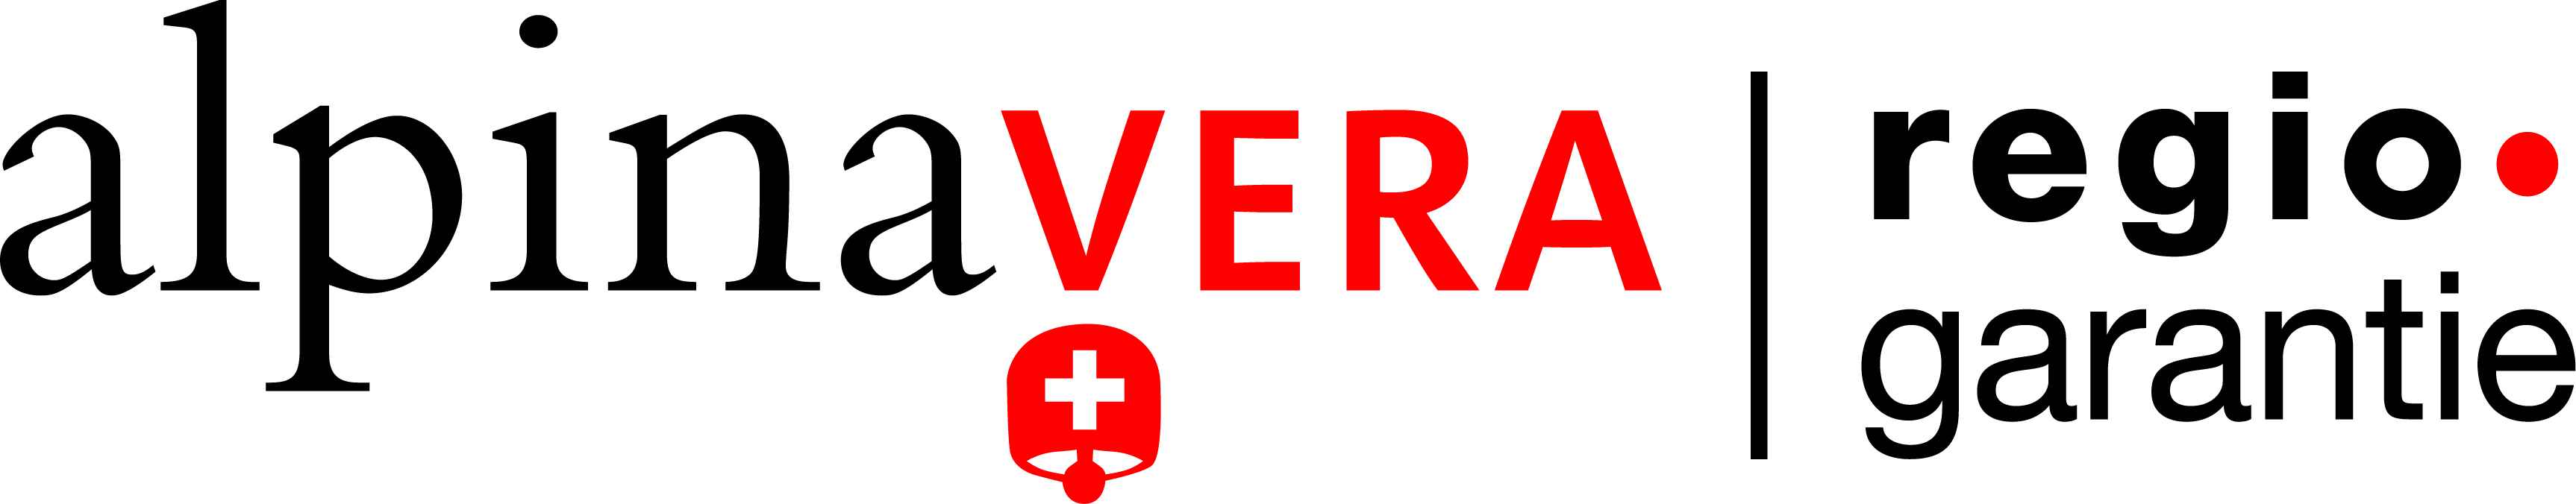 Logo Marques régionales: alpinavera